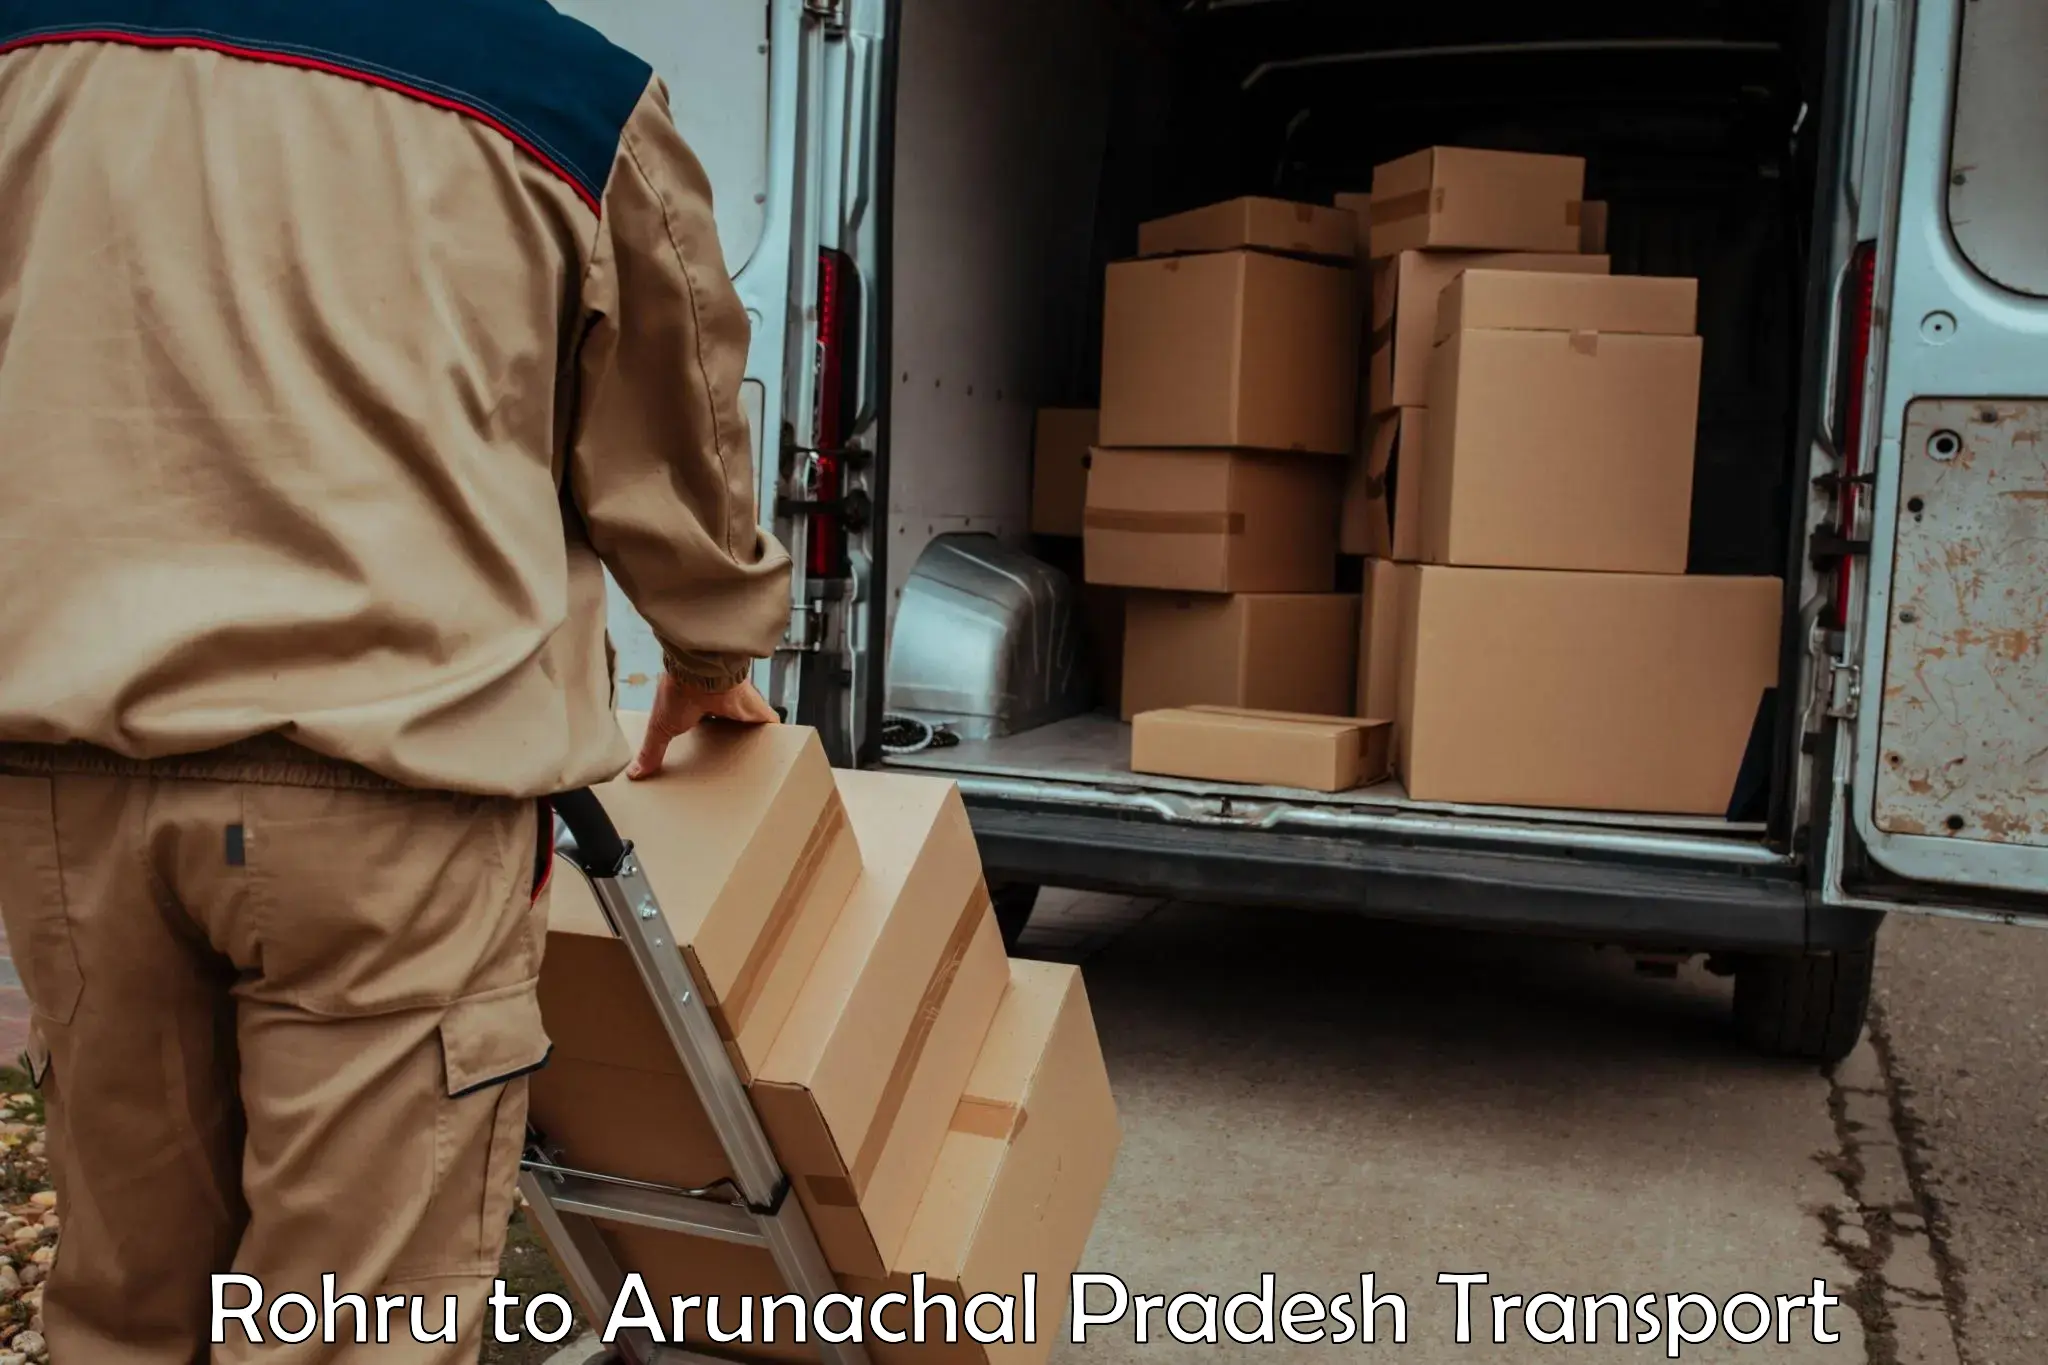 Interstate transport services Rohru to Arunachal Pradesh